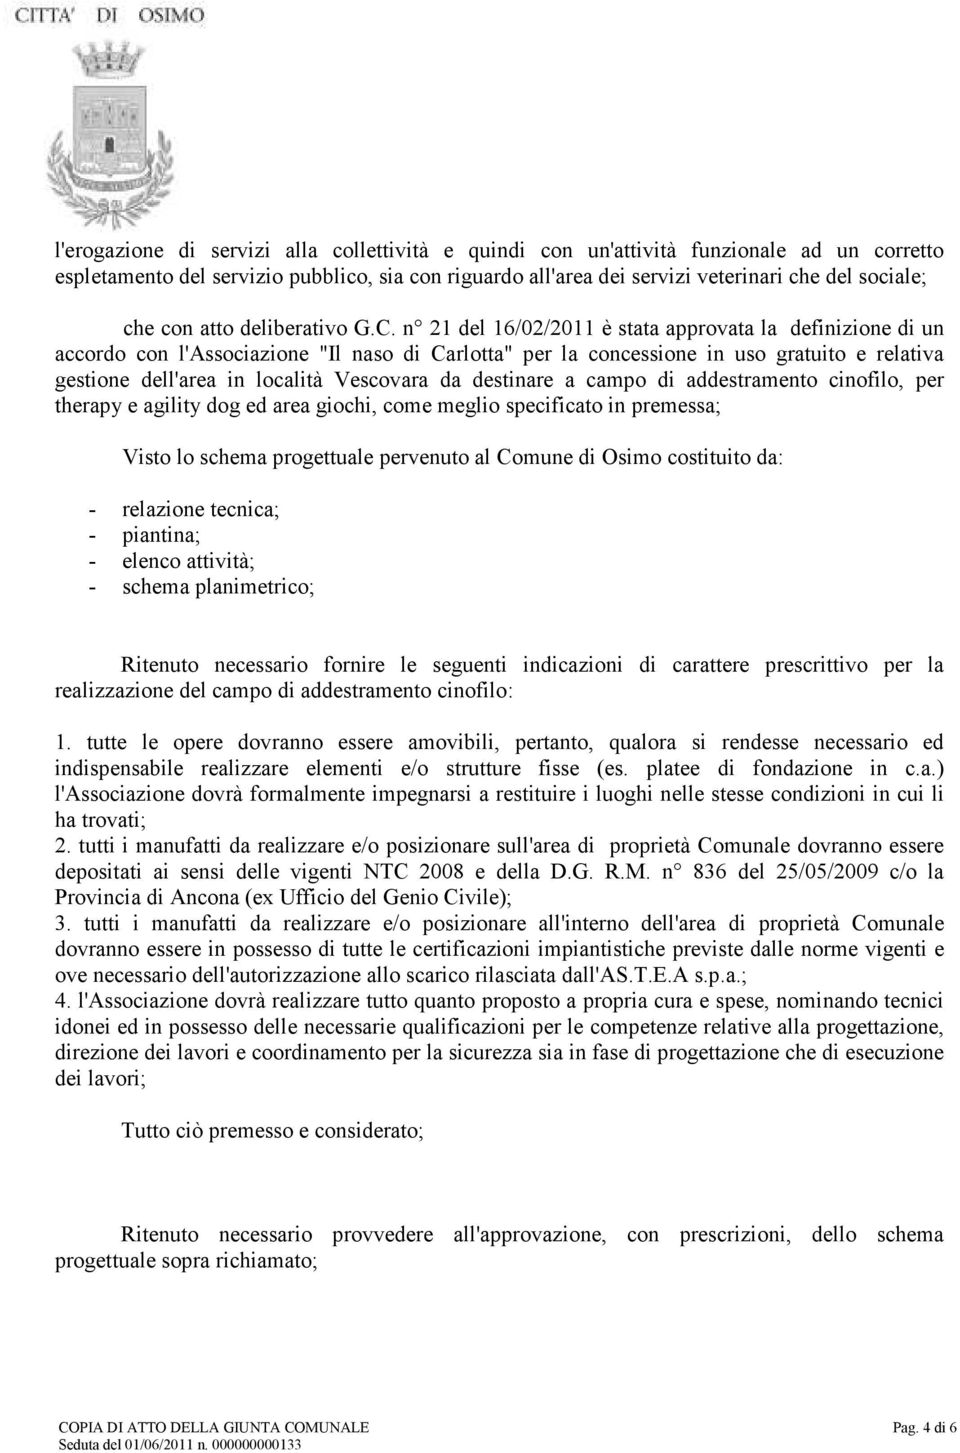 n 21 del 16/02/2011 è stata approvata la definizione di un accordo con l'associazione "Il naso di Carlotta" per la concessione in uso gratuito e relativa gestione dell'area in località Vescovara da